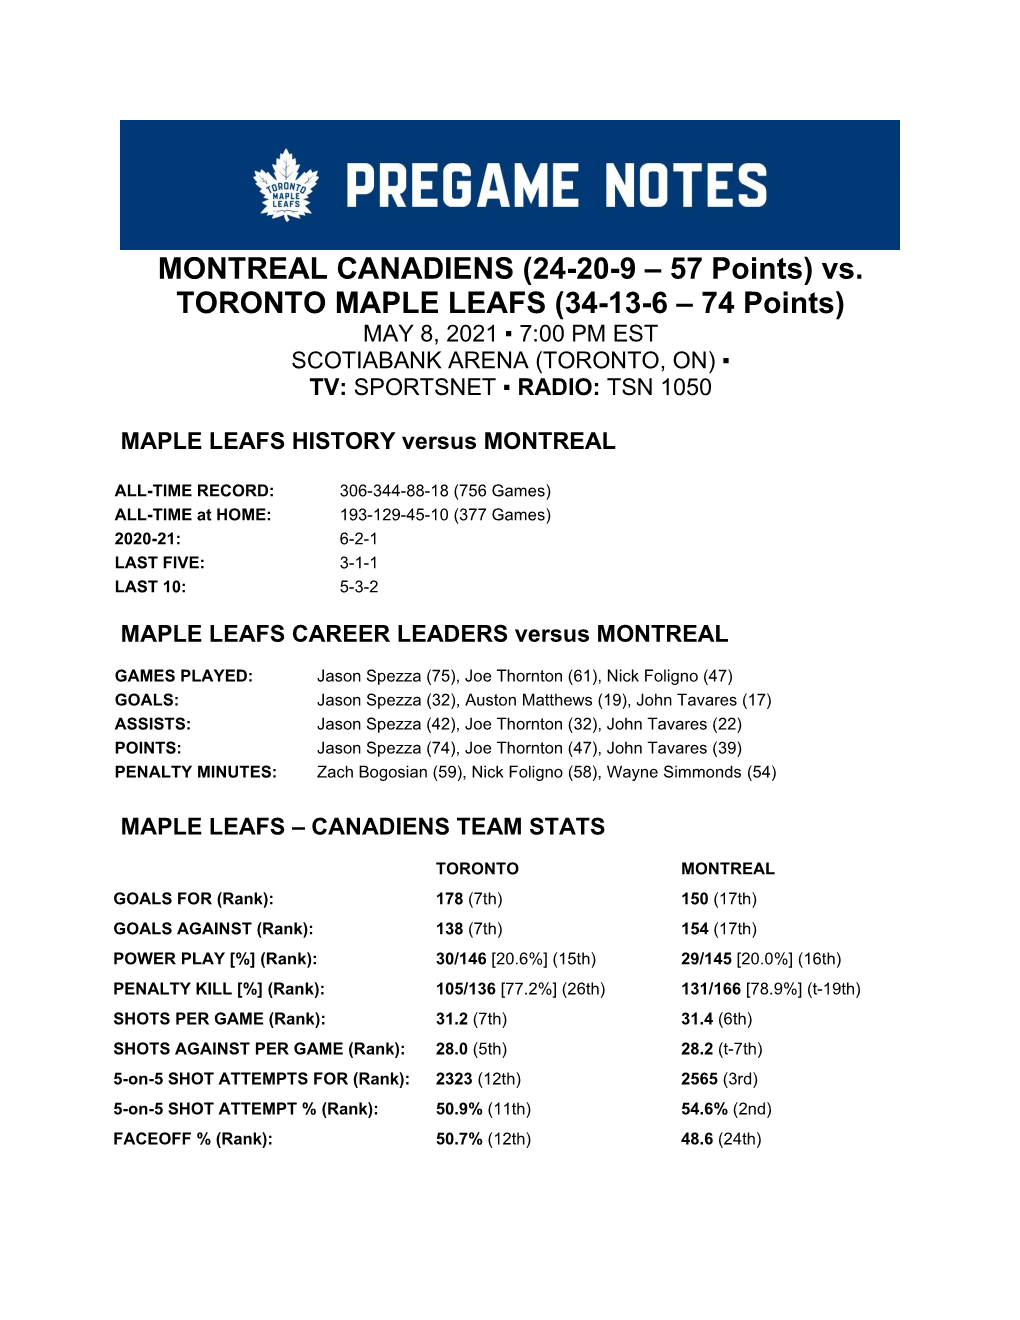 MONTREAL CANADIENS (24-20-9 – 57 Points) Vs. TORONTO